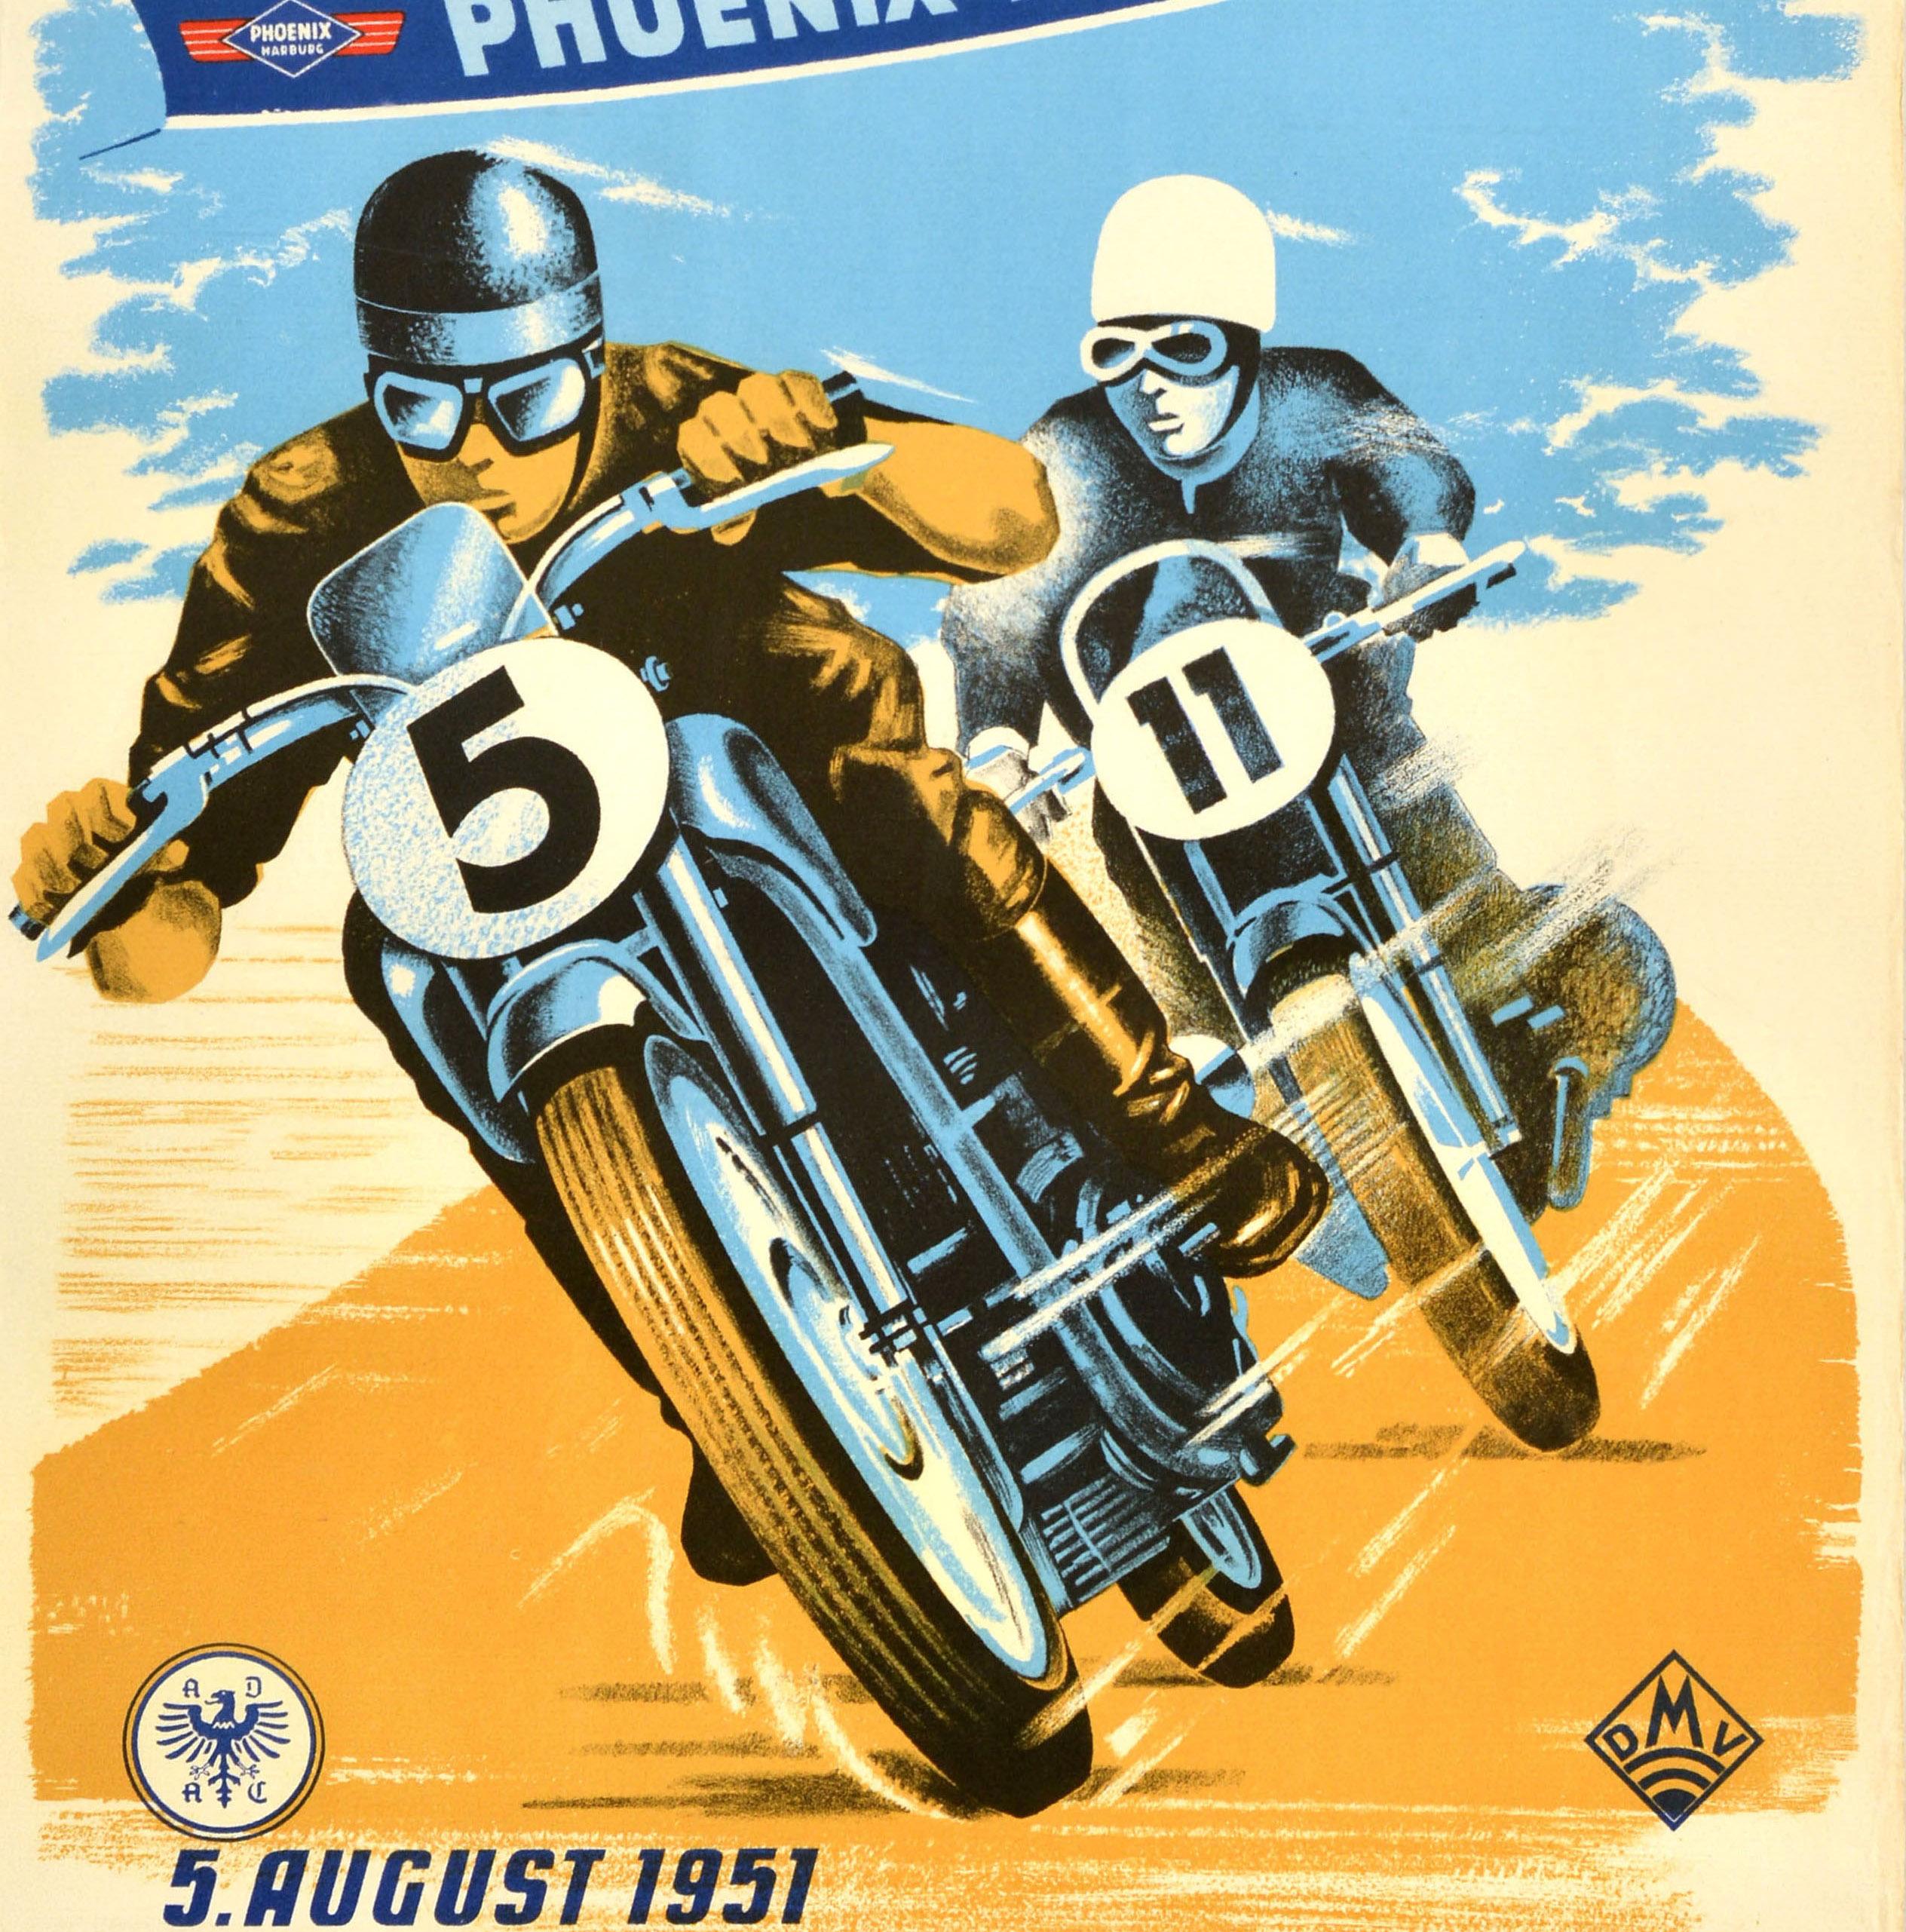 Original Vintage Motorsport Poster Motorcycle Race Phoenix Reifen 1951 Kellersee - Print by Unknown